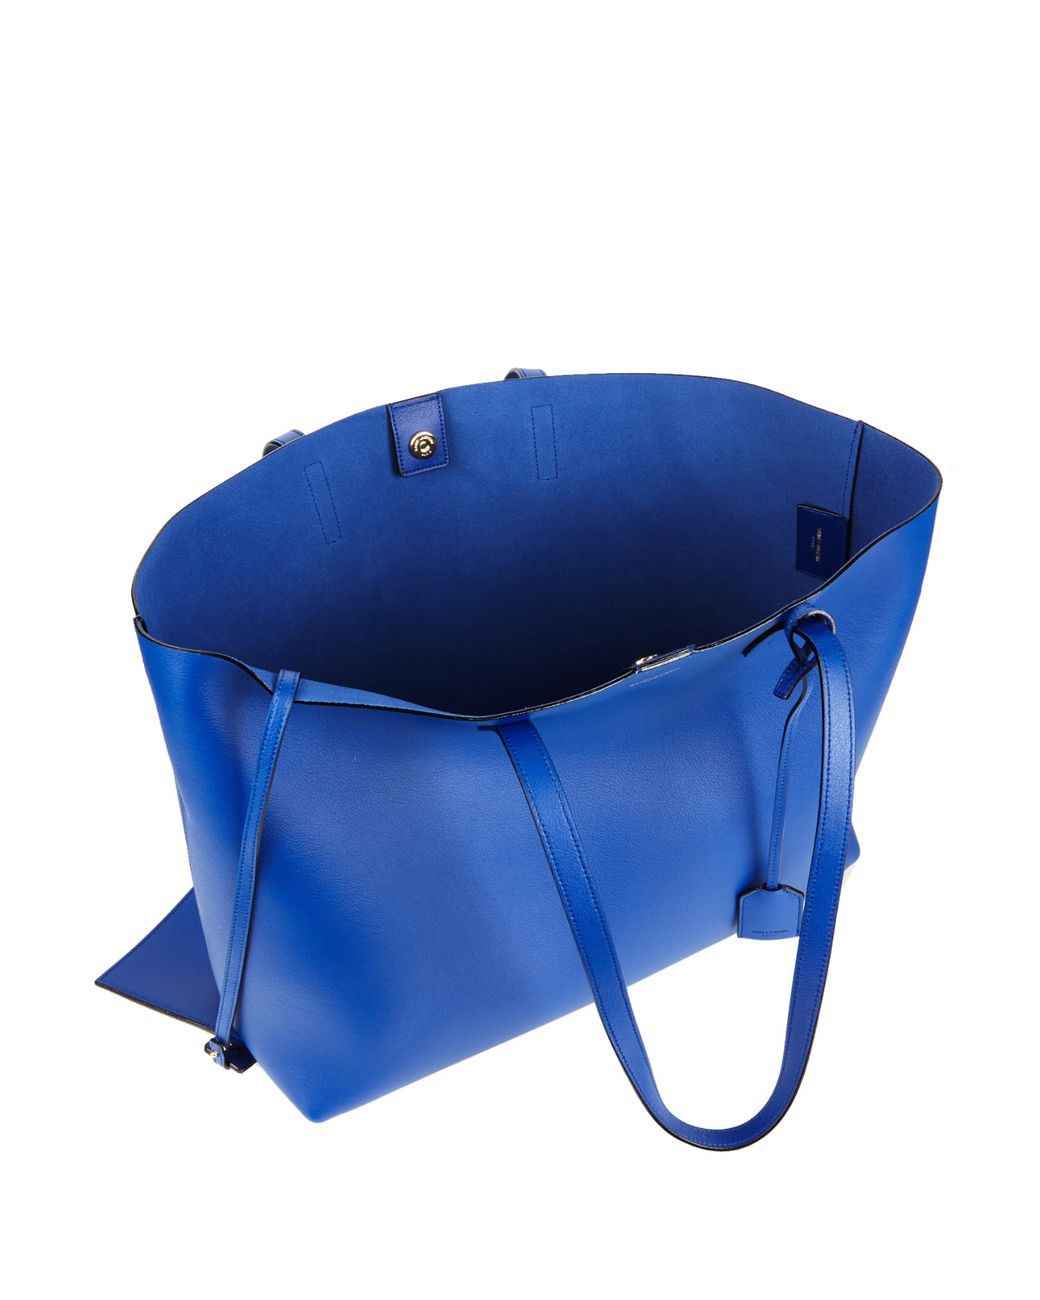 YSL Blue Metallic Leather Bucket Bag